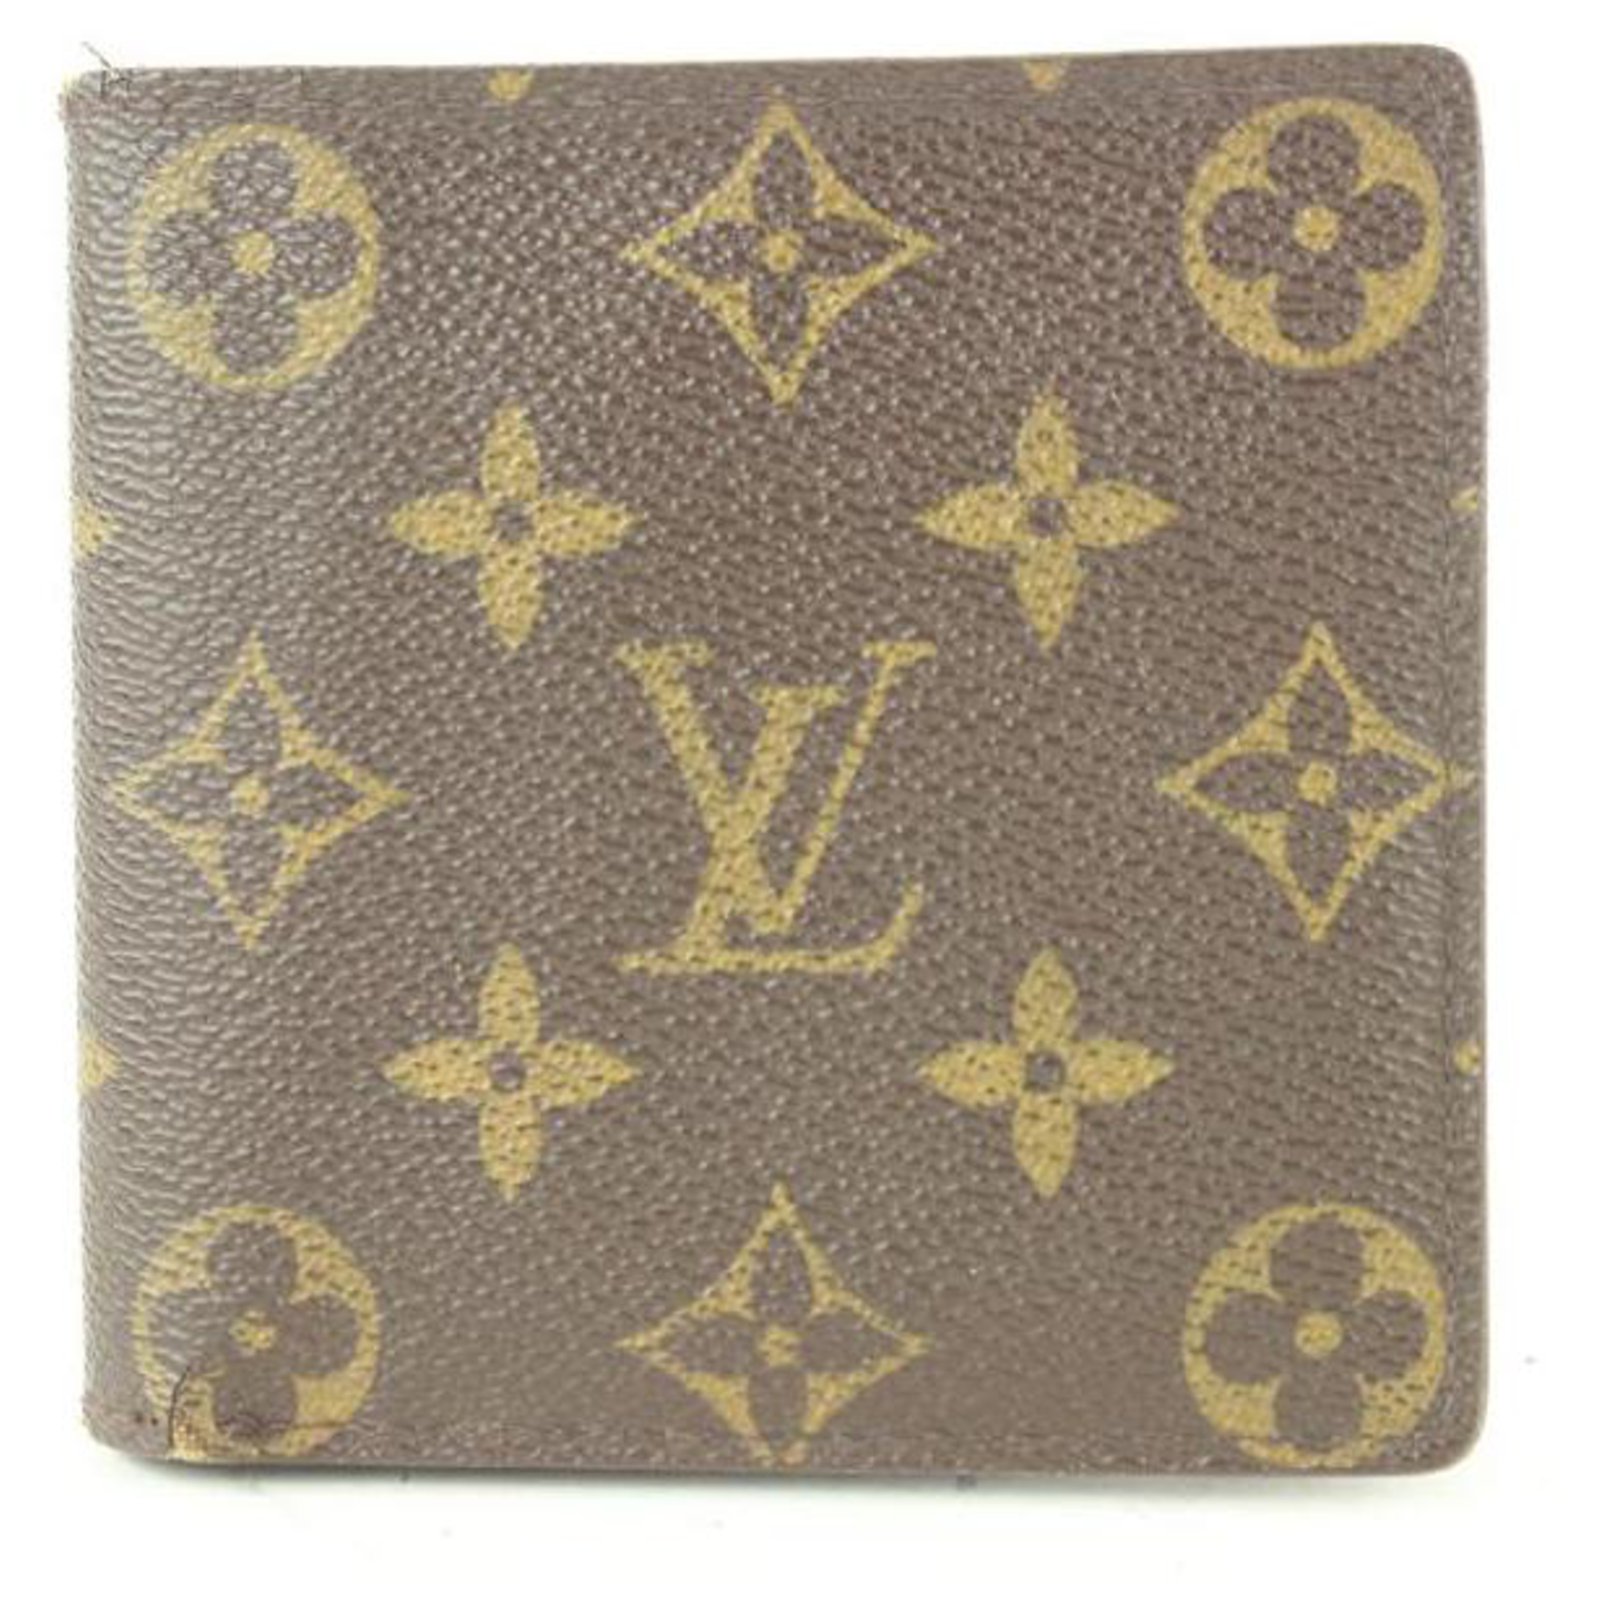 Monogram Louis Vuitton Wallet: Multiple